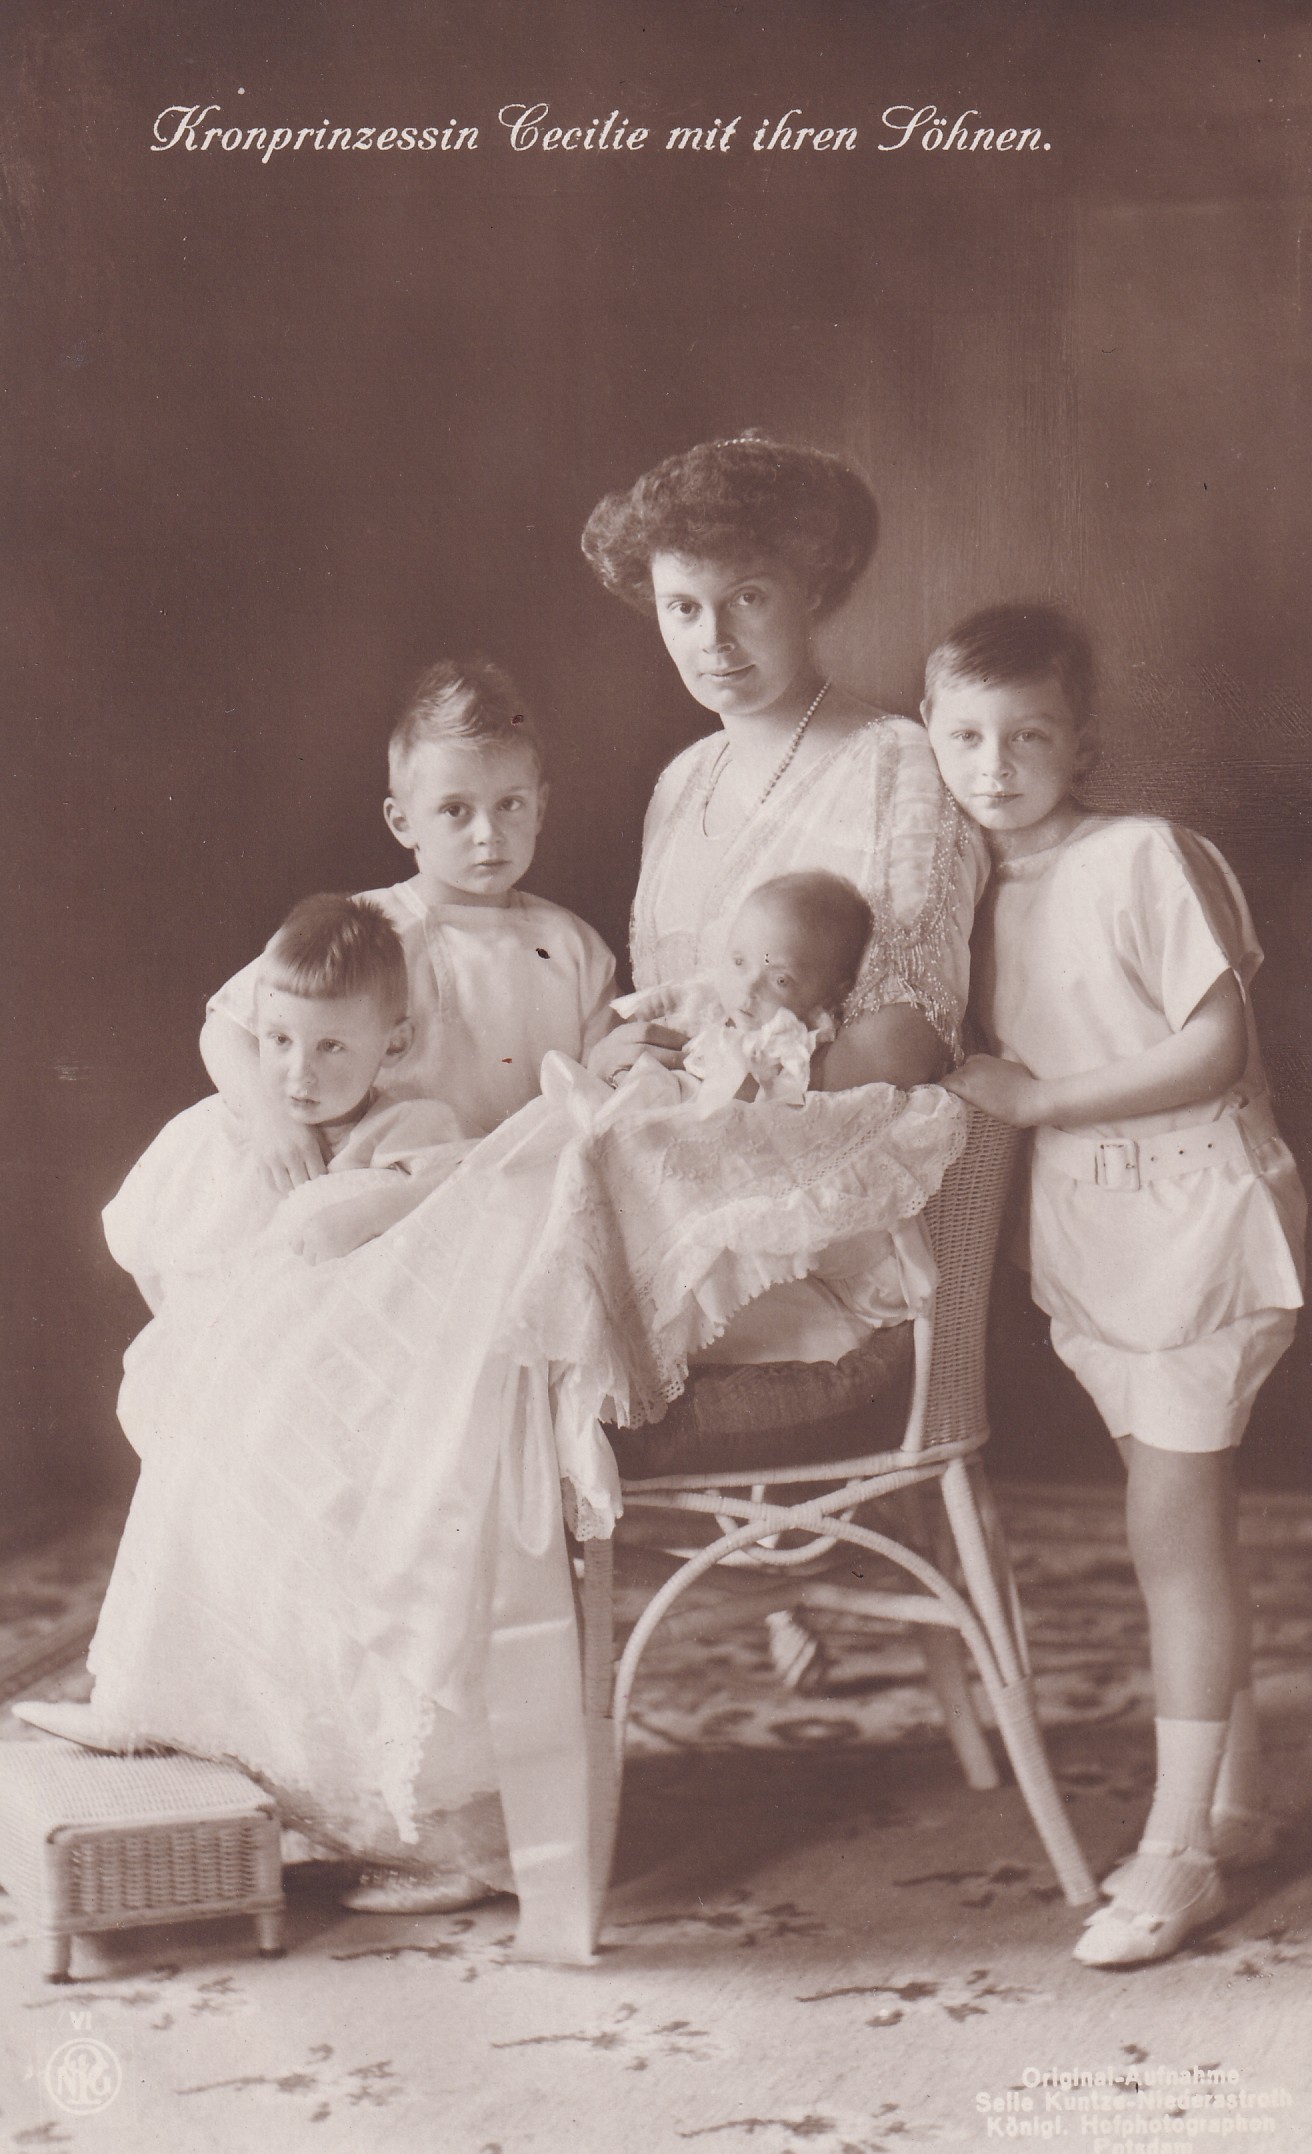 Bildpostkarte mit Foto der Kronprinzessin Cecilie und ihren vier Söhnen, 1912 (Schloß Wernigerode GmbH RR-F)